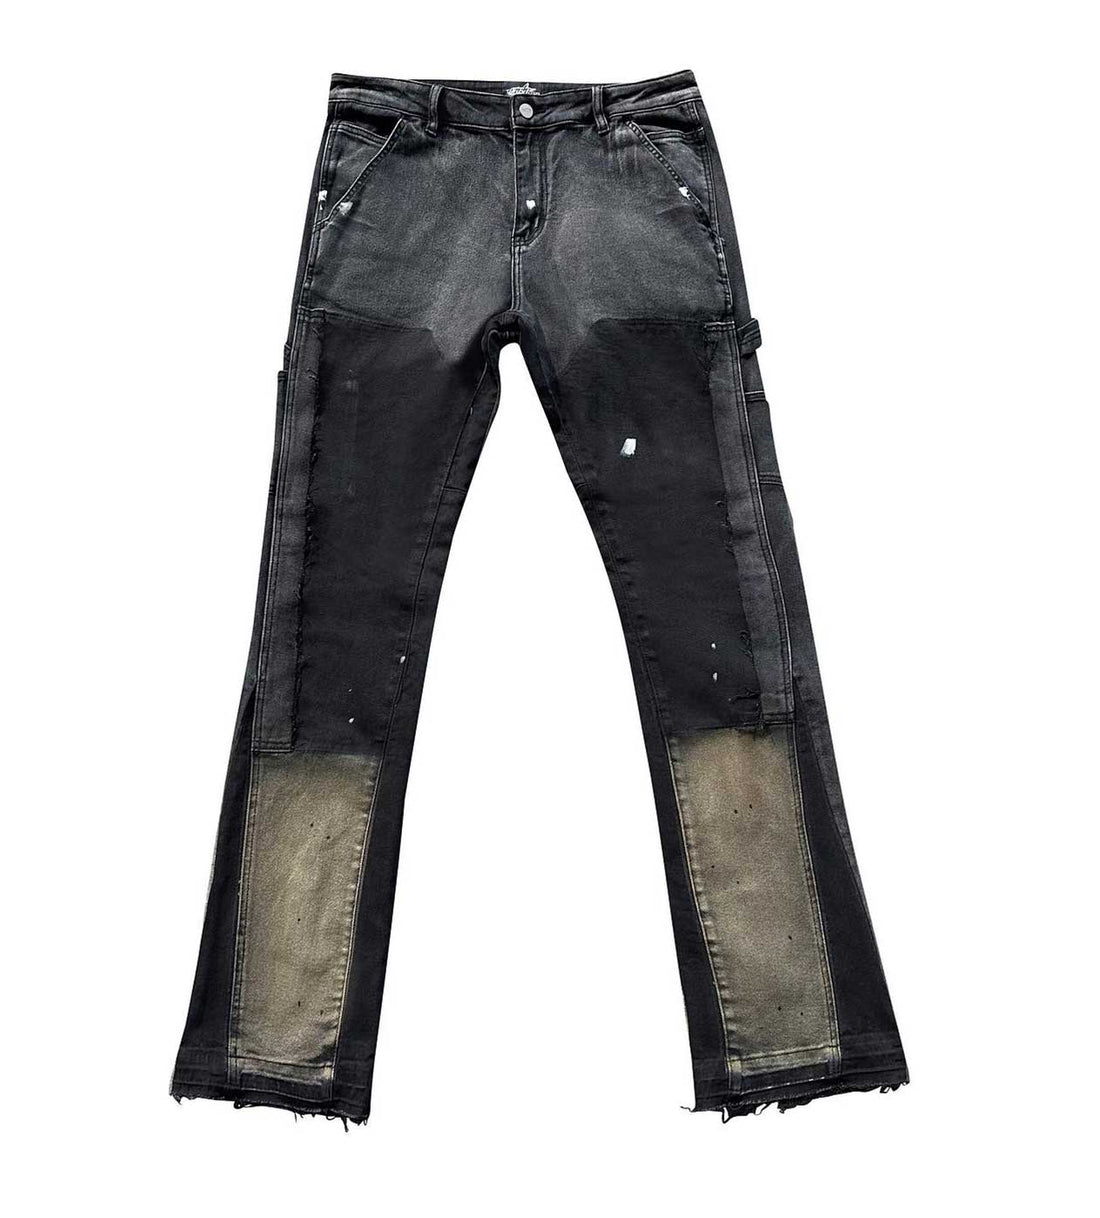 https://restockar.com/cdn/shop/files/Triple-Sevens-Flared-Jeans-Black-Front.jpg?v=1700770706&width=1100